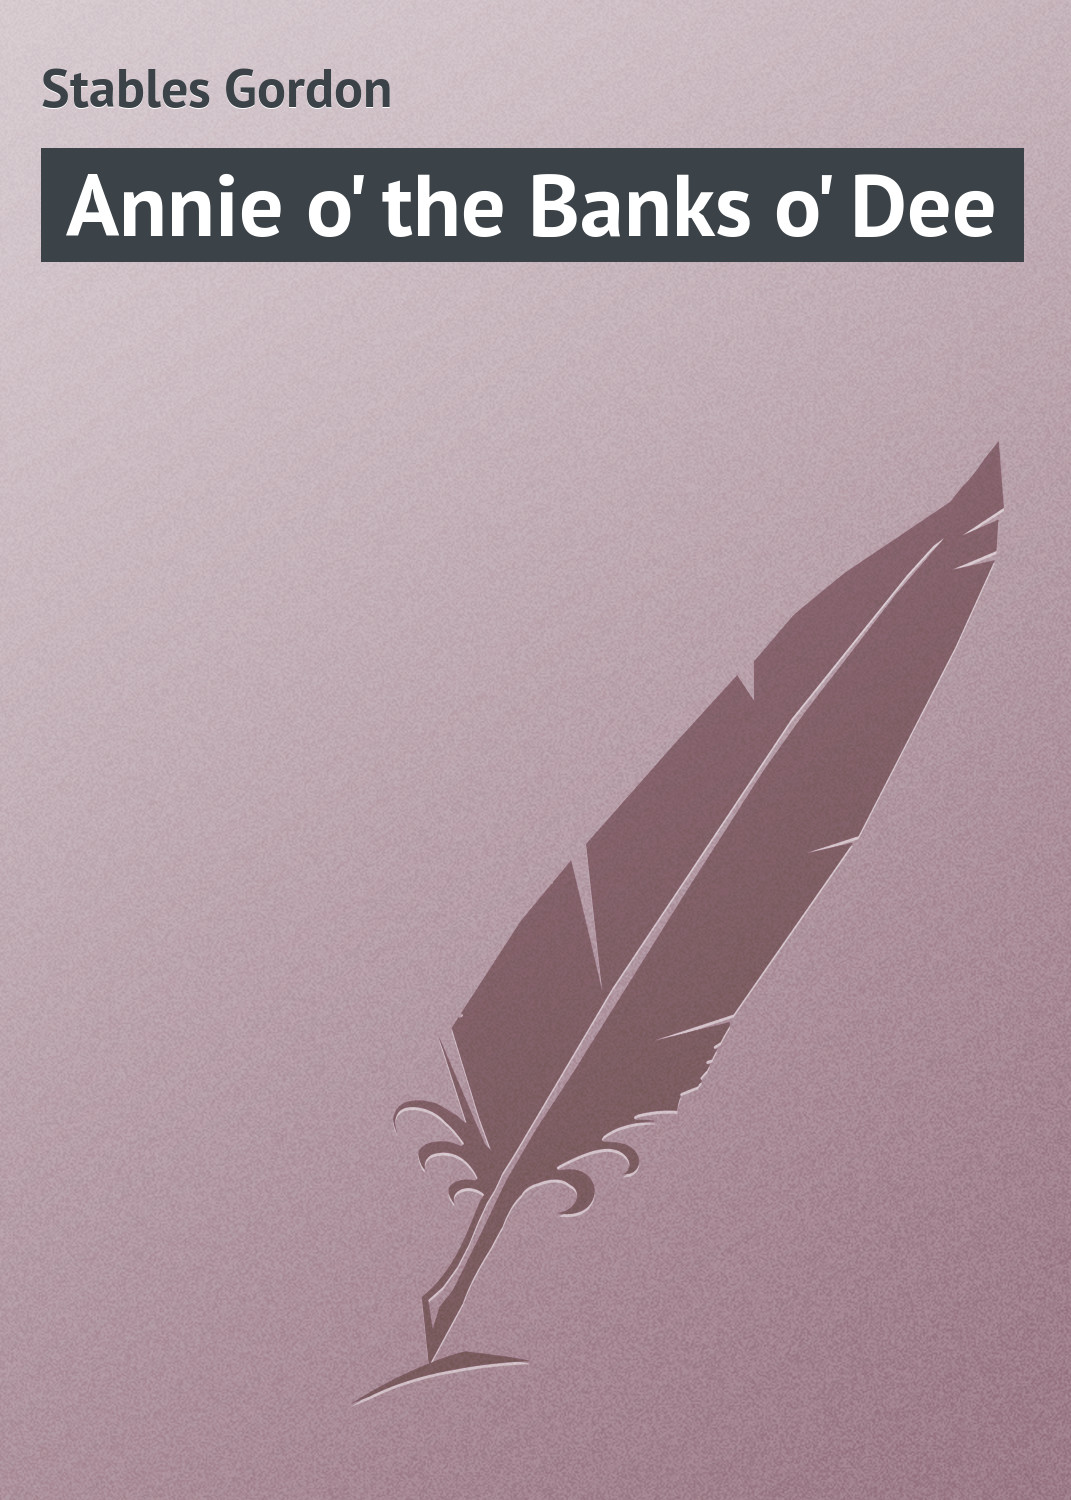 Книга Annie o' the Banks o' Dee из серии , созданная Gordon Stables, может относится к жанру Зарубежная классика, Зарубежные детские книги. Стоимость электронной книги Annie o' the Banks o' Dee с идентификатором 23164651 составляет 5.99 руб.